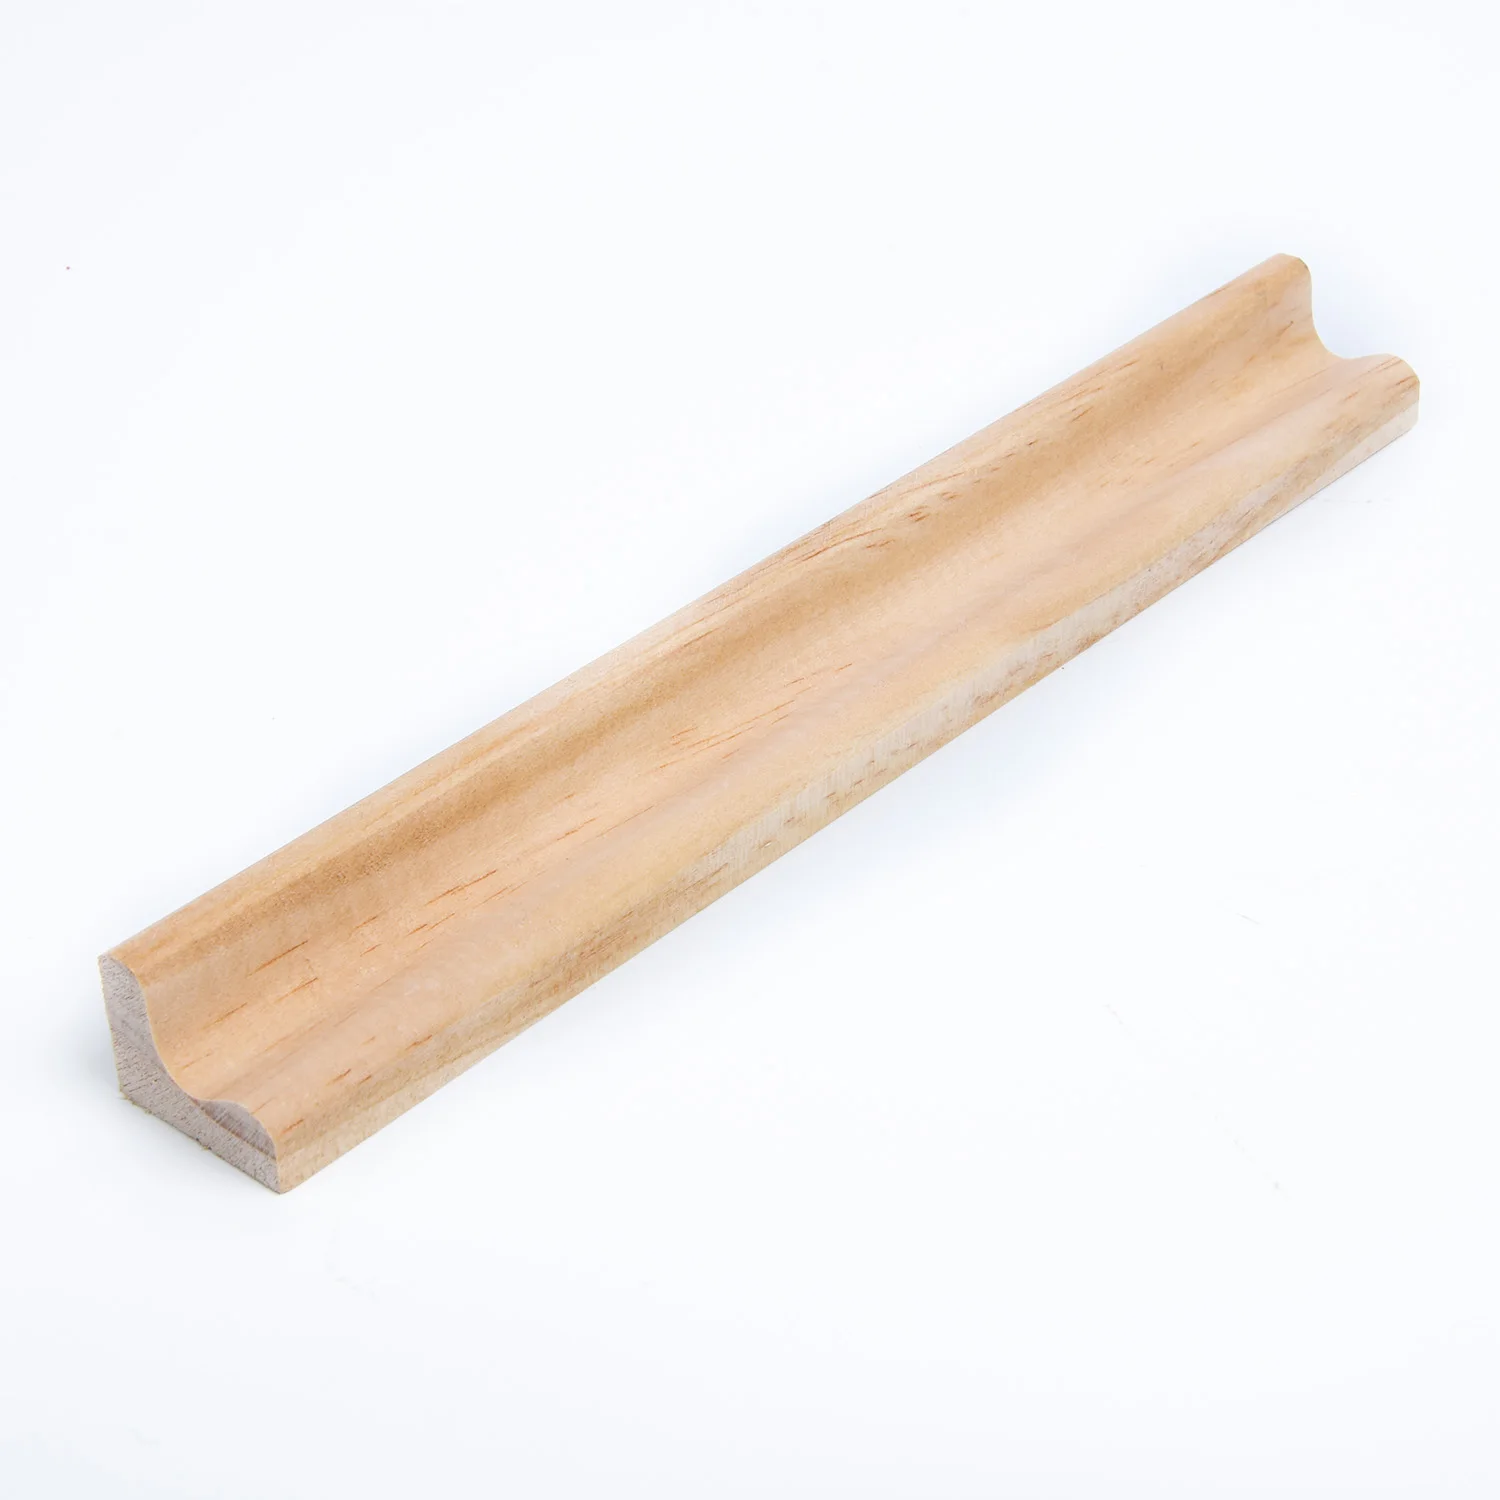 4 шт. деревянный стеллаж для плитки деревянный скрэббл номера замена плитки стенд ремесла Великобритании